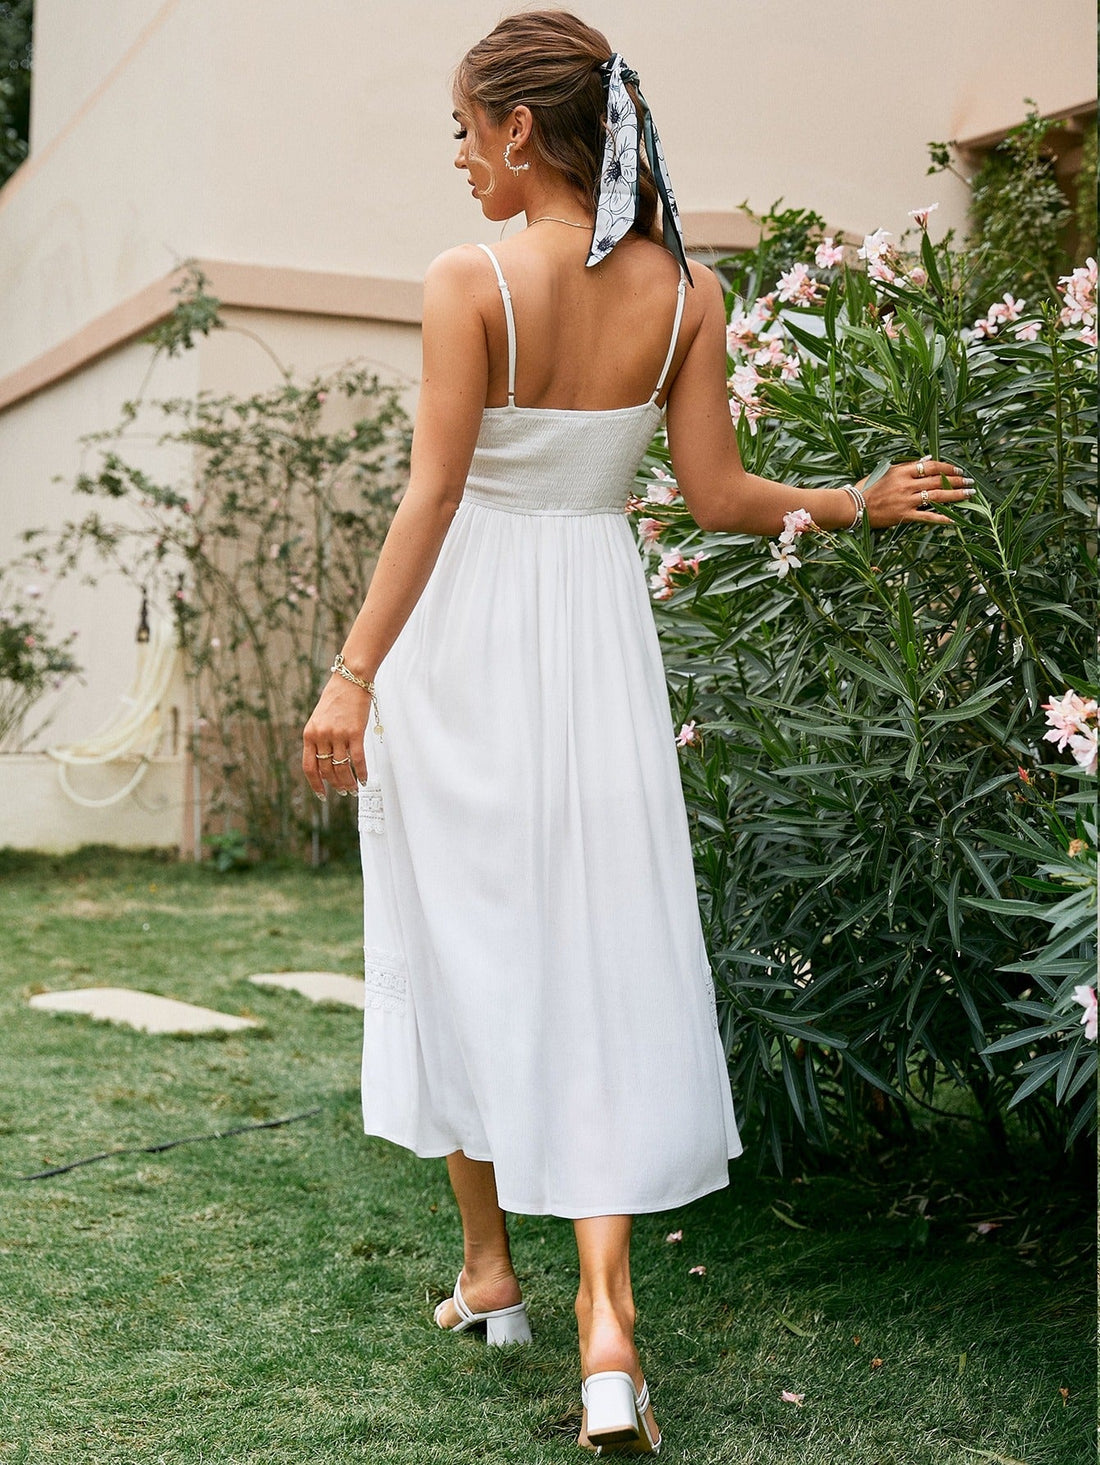 Women's Summer Lace White High Waist Long Dress